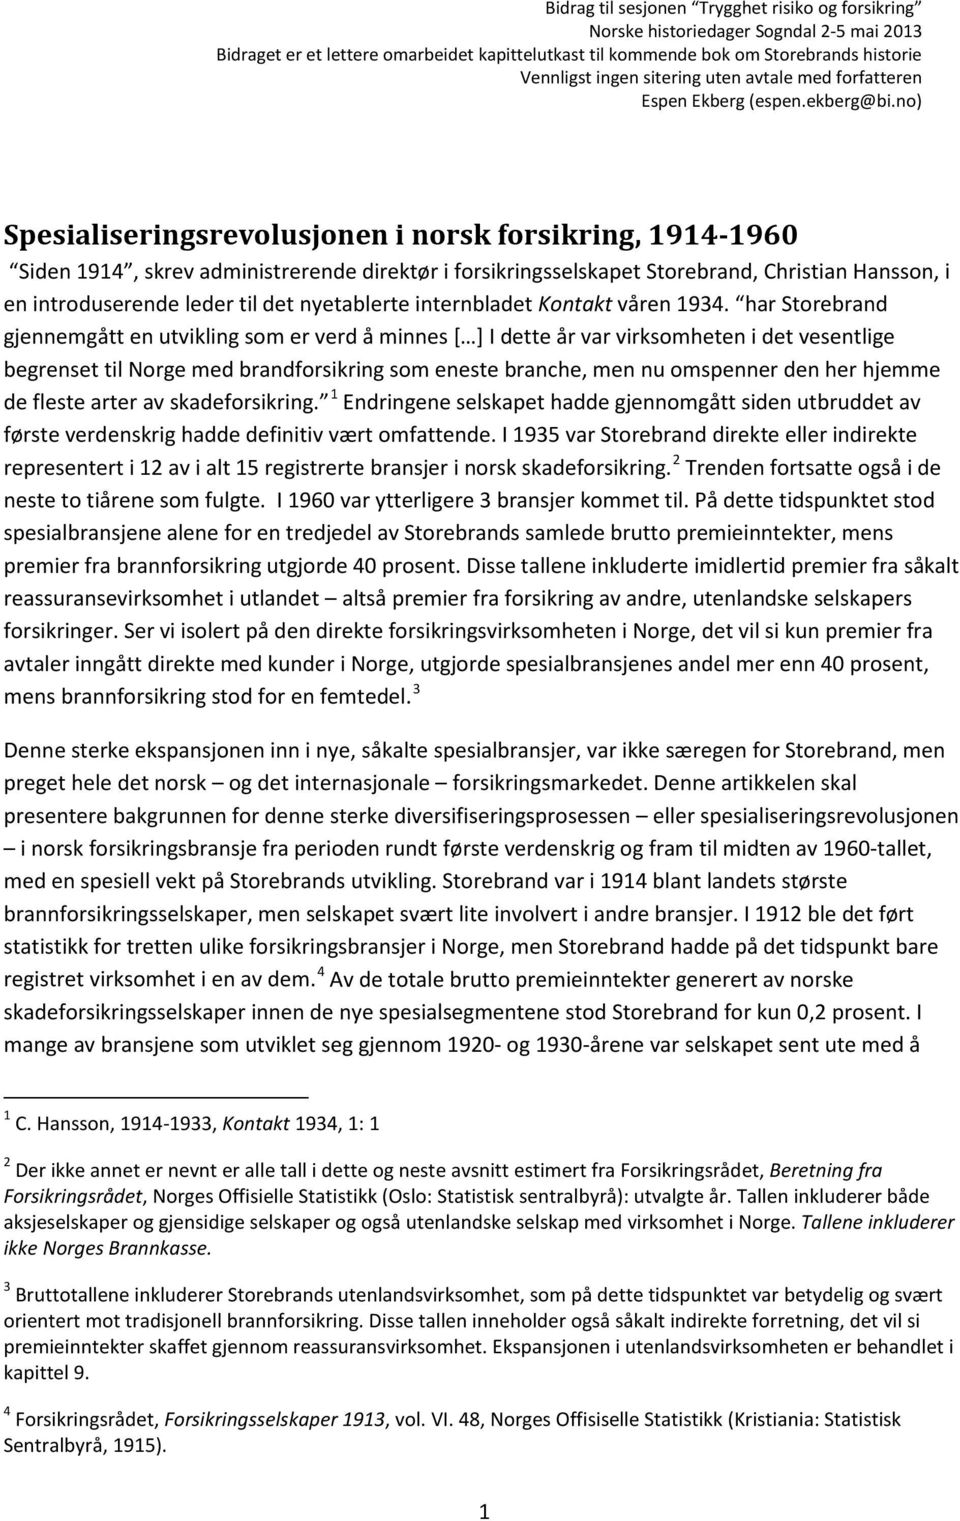 no) Spesialiseringsrevolusjonen i norsk forsikring, 1914-1960 Siden 1914, skrev administrerende direktør i forsikringsselskapet Storebrand, Christian Hansson, i en introduserende leder til det